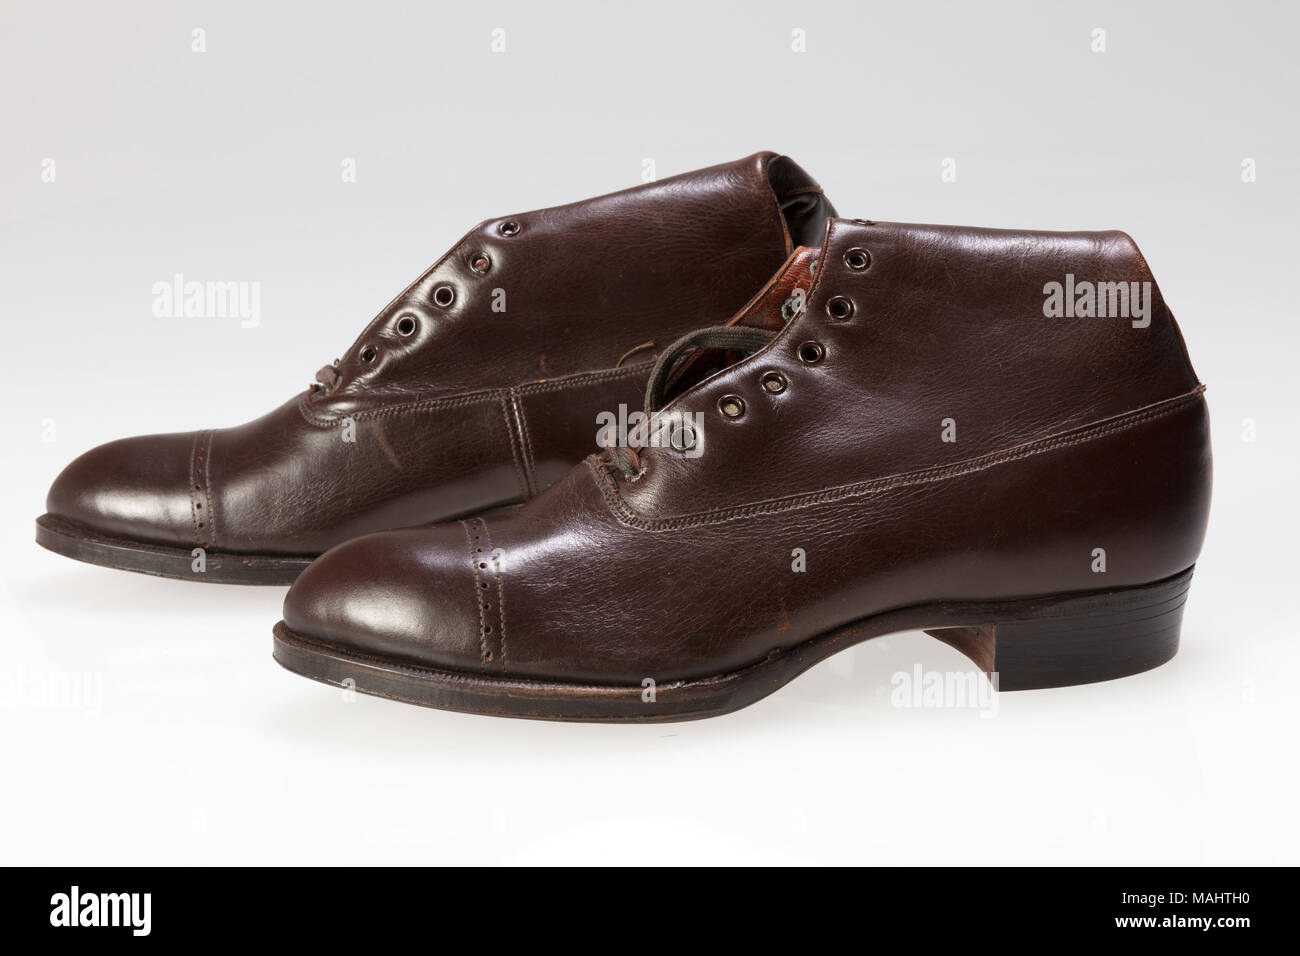 Peters Shoe Company marque Black Diamond acajou d'enfants polonais côté  sport style high top bottines avec boîte d'origine . Entre 1900 et 1922,  Saint Louis a évolué à partir d'un centre de